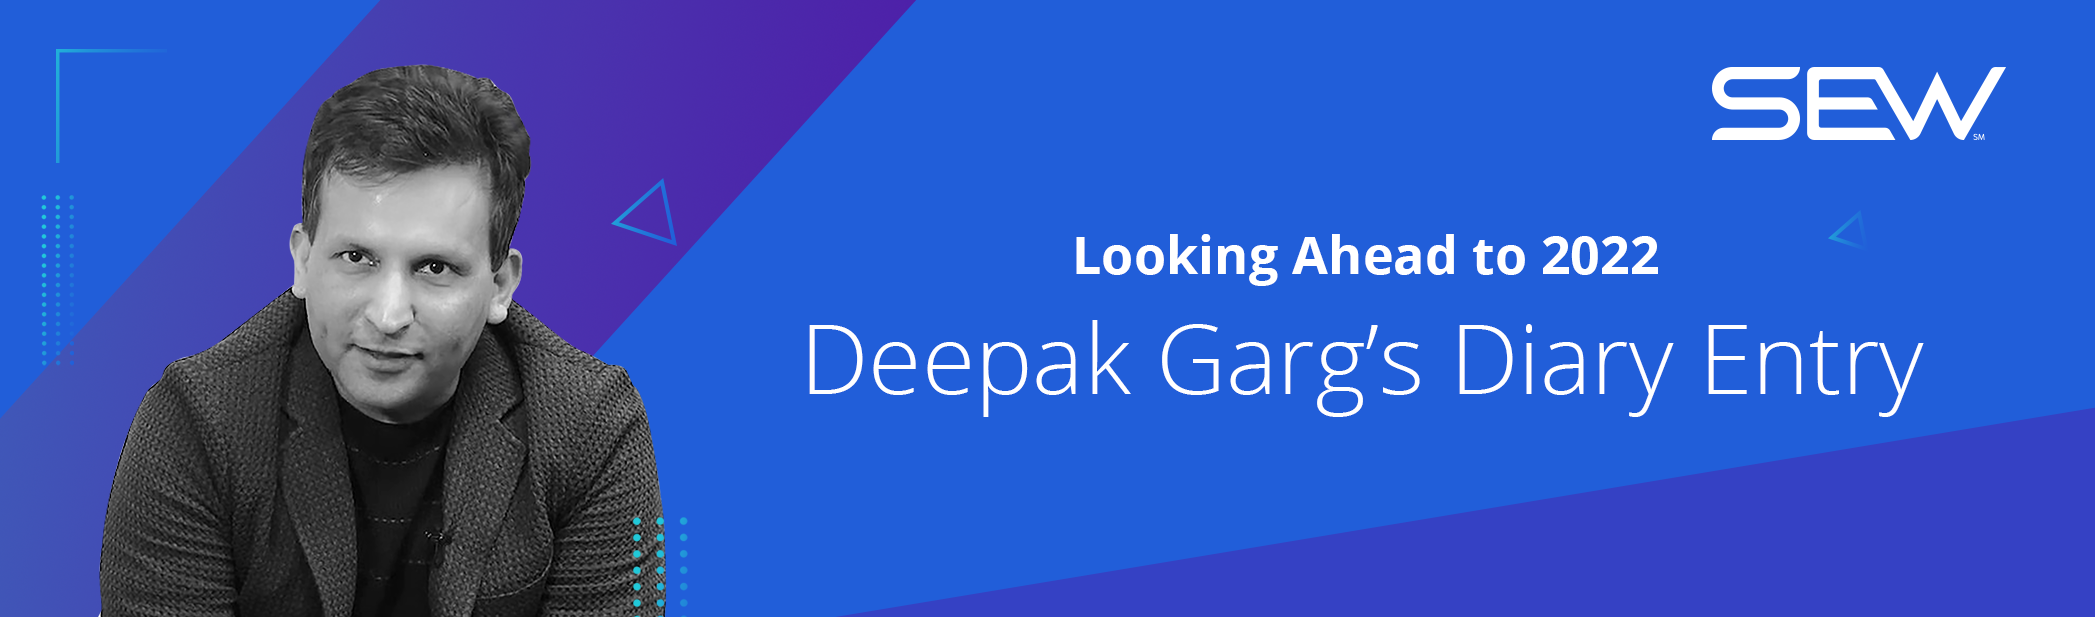 Looking Ahead to 2022- Deepak Garg’s Diary Entry